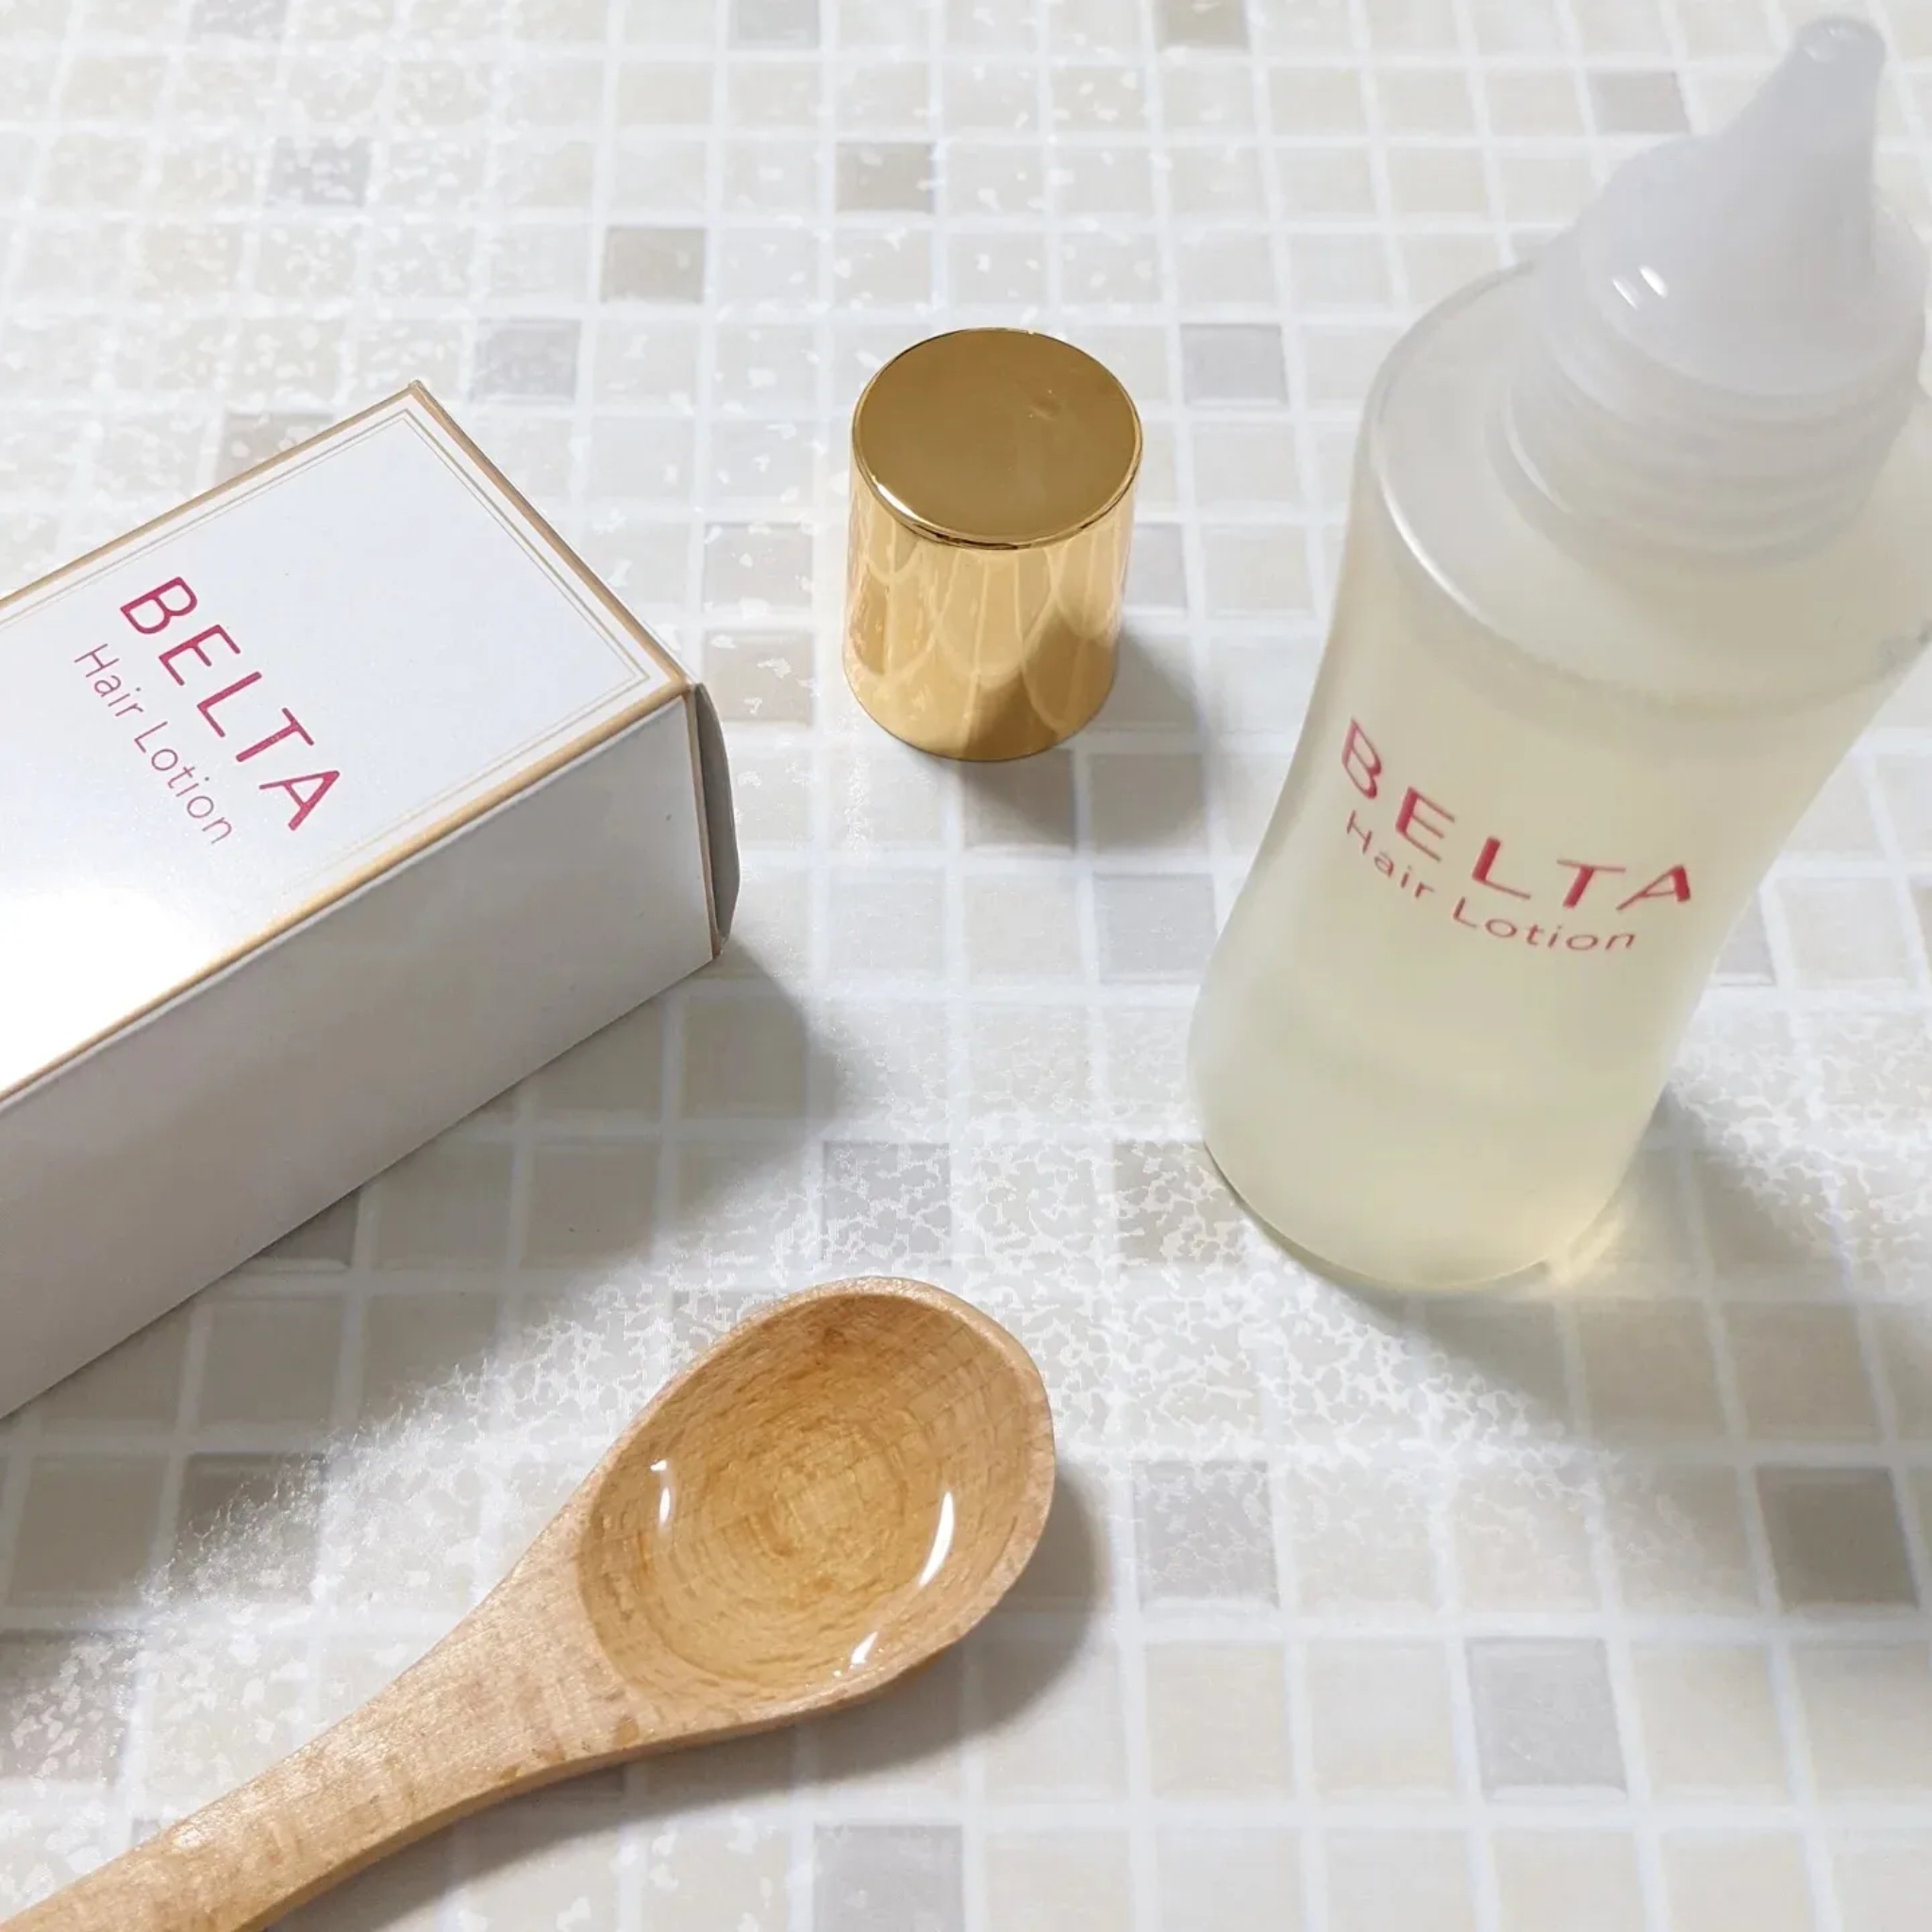 BELTA(ベルタ) / ベルタヘアローションの公式商品情報｜美容・化粧品 